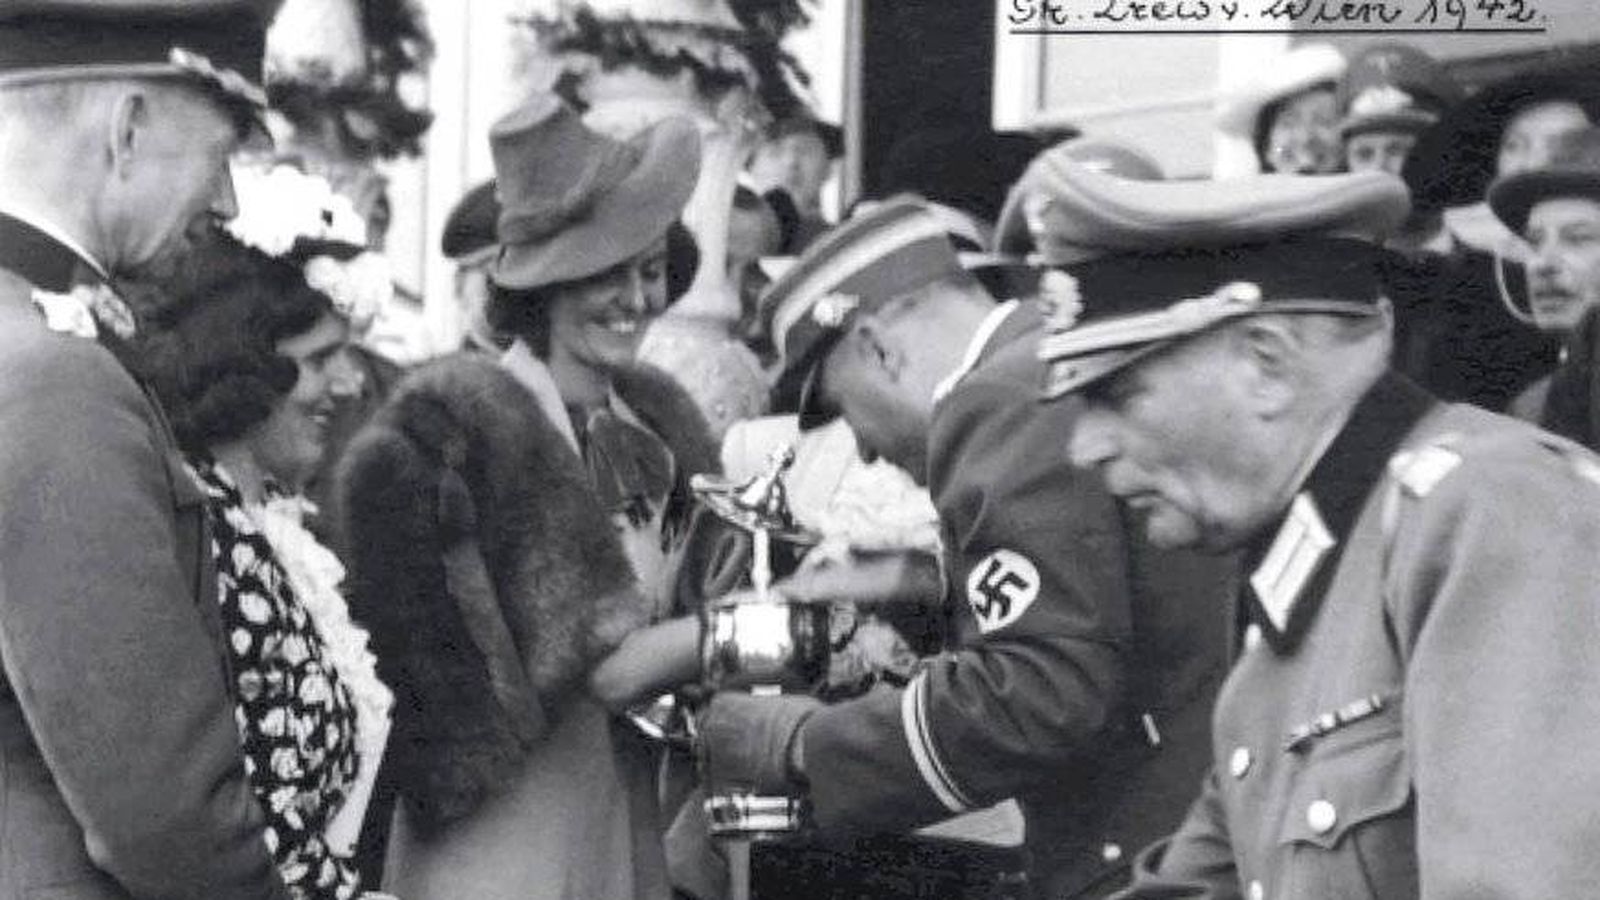 Foto: La condesa Margit von Tyssen (von Batthyany tras su boda) recibe un trofeo de manos de un jerarca nazi en la Hípica de Viena en 1942.